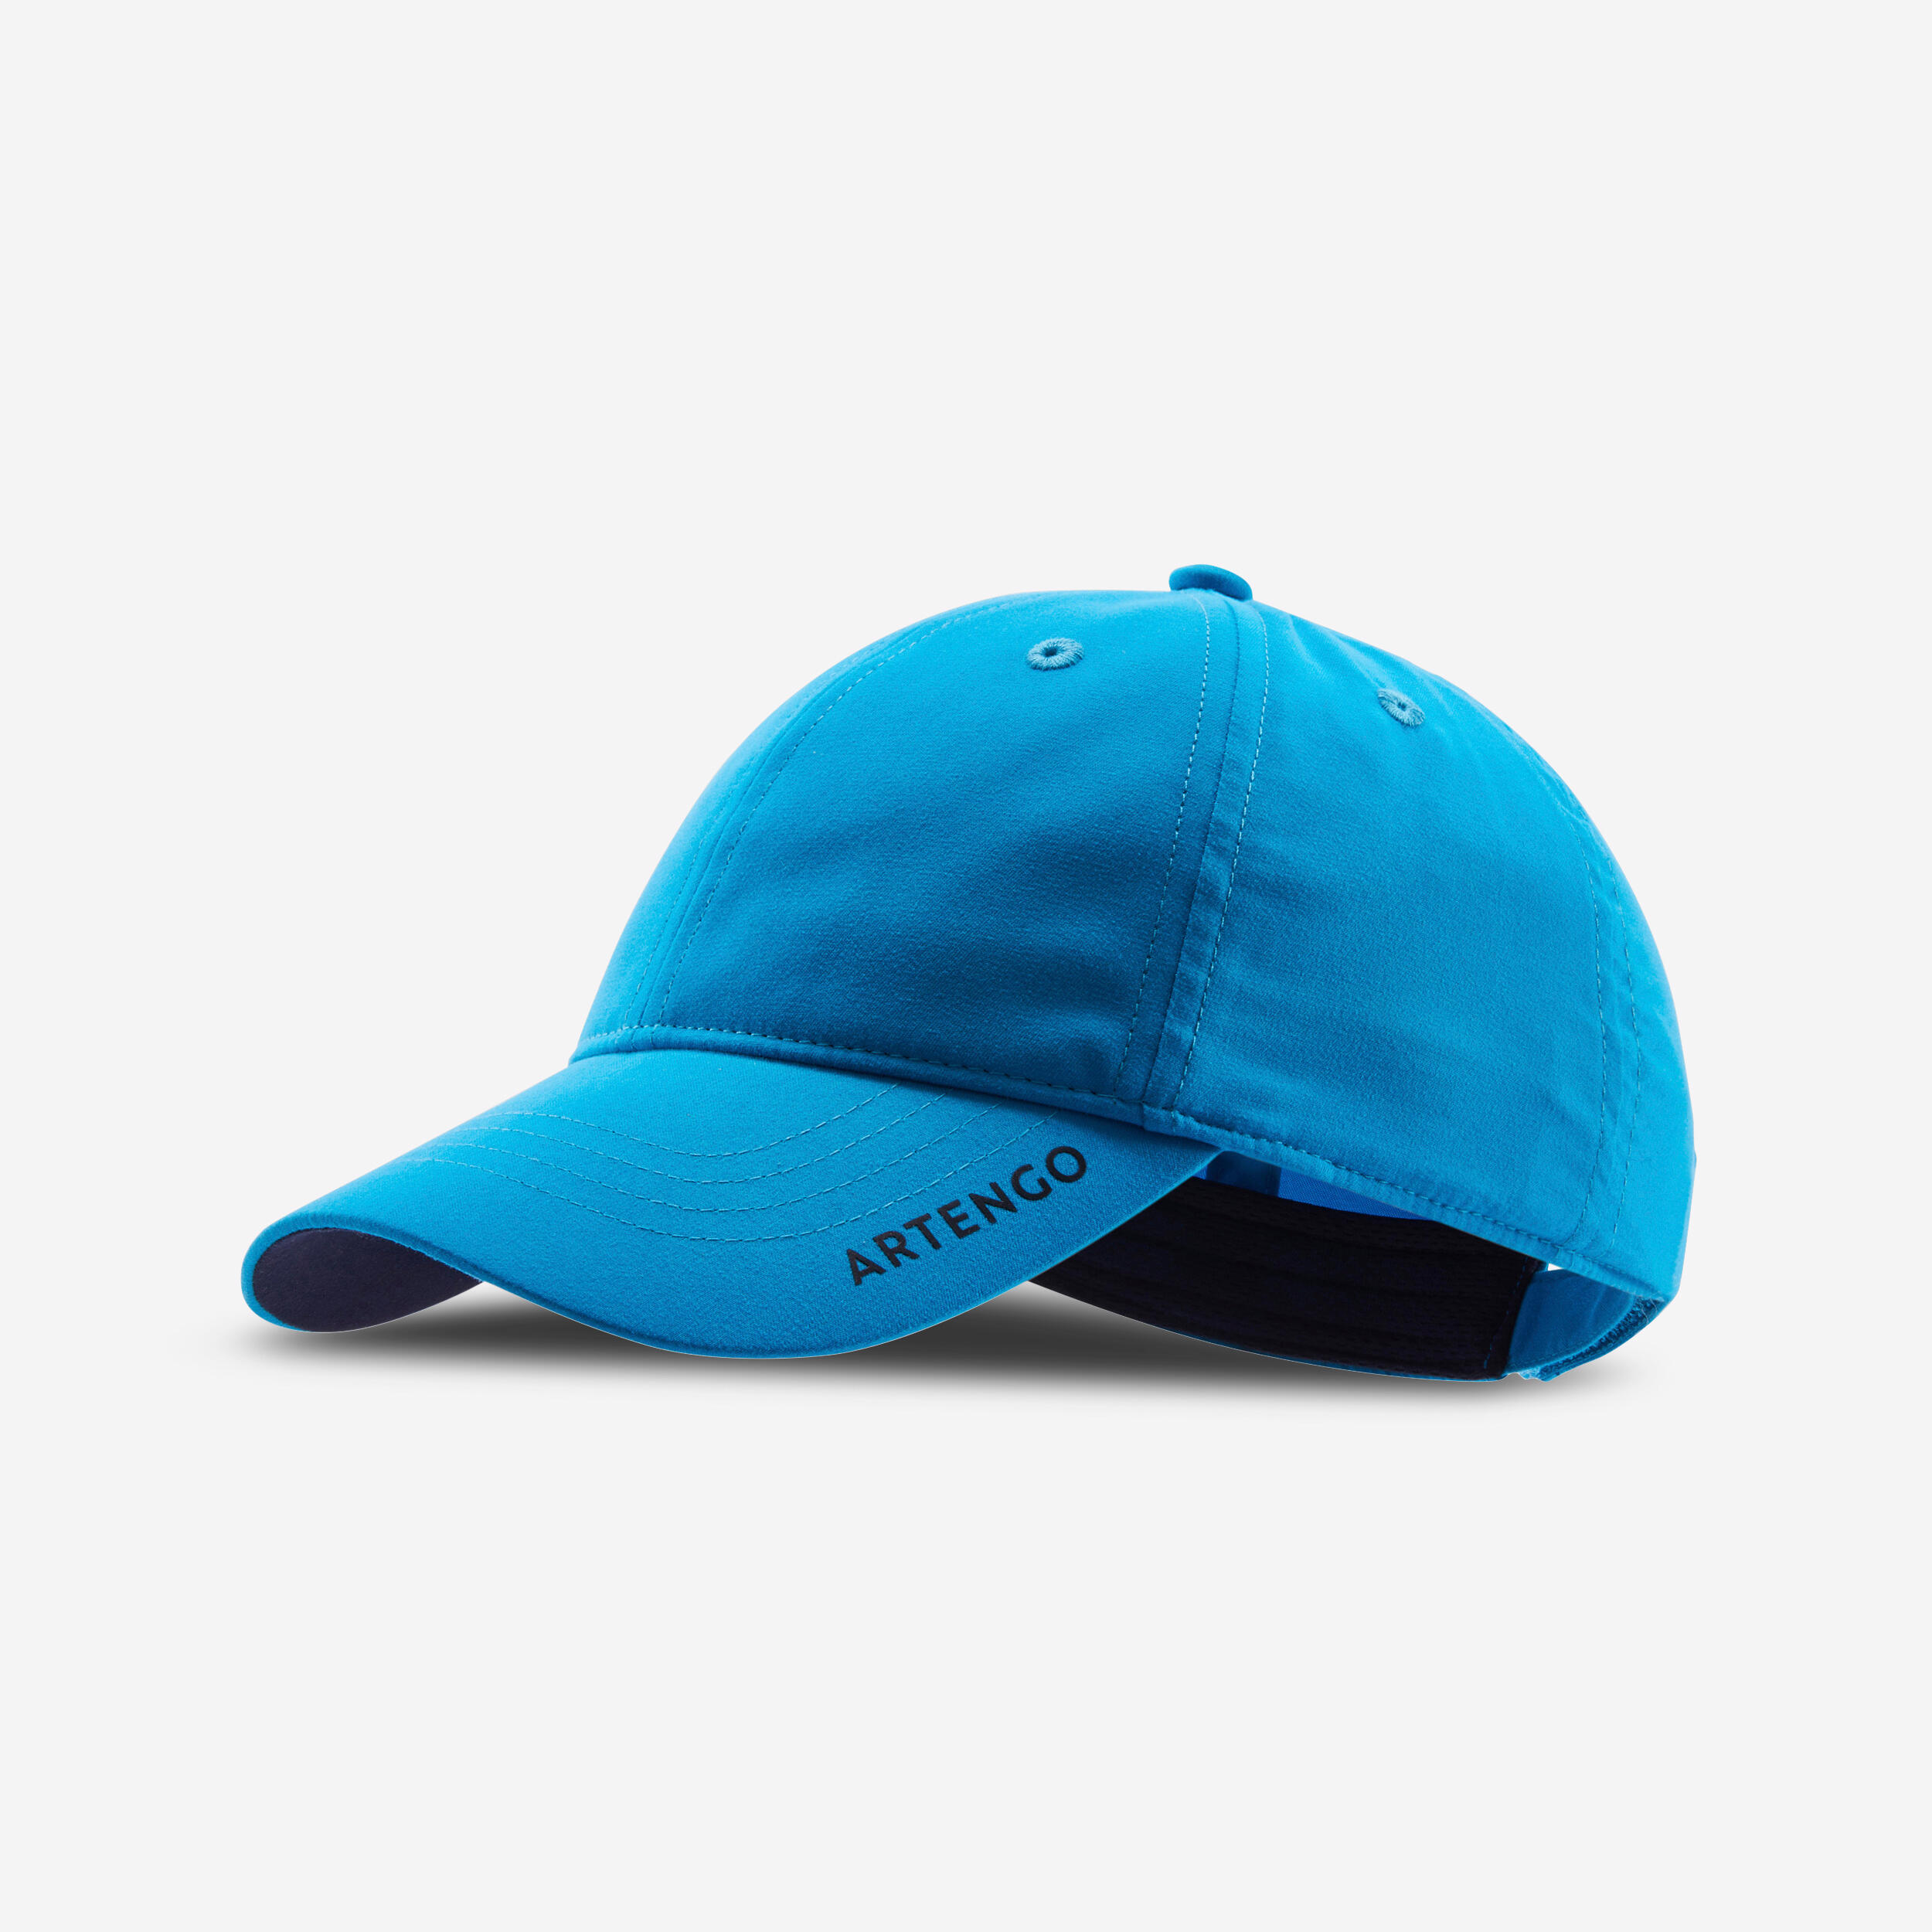 Tennis Cap TC 500 S54 - Turquoise/Blue 1/5